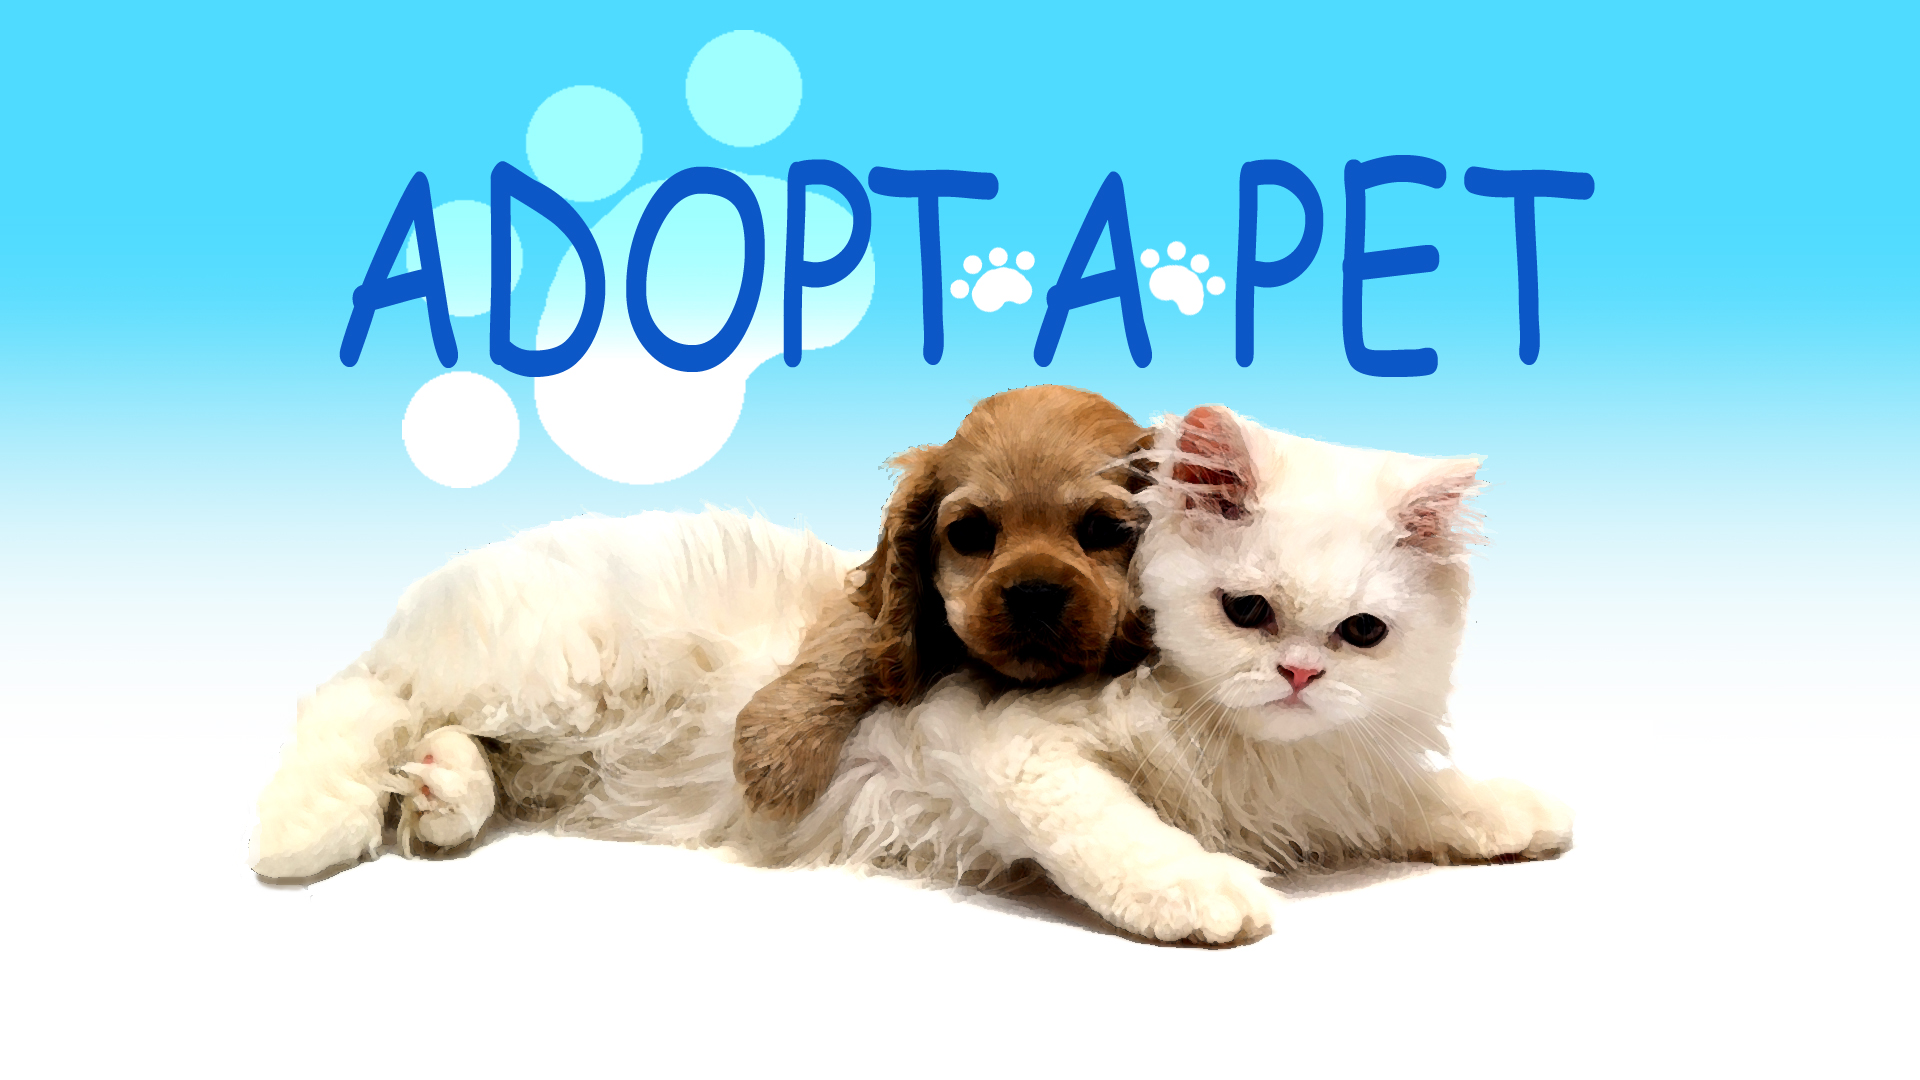 Adopt A Pet Reviews - 104 Reviews of Adoptapet.com